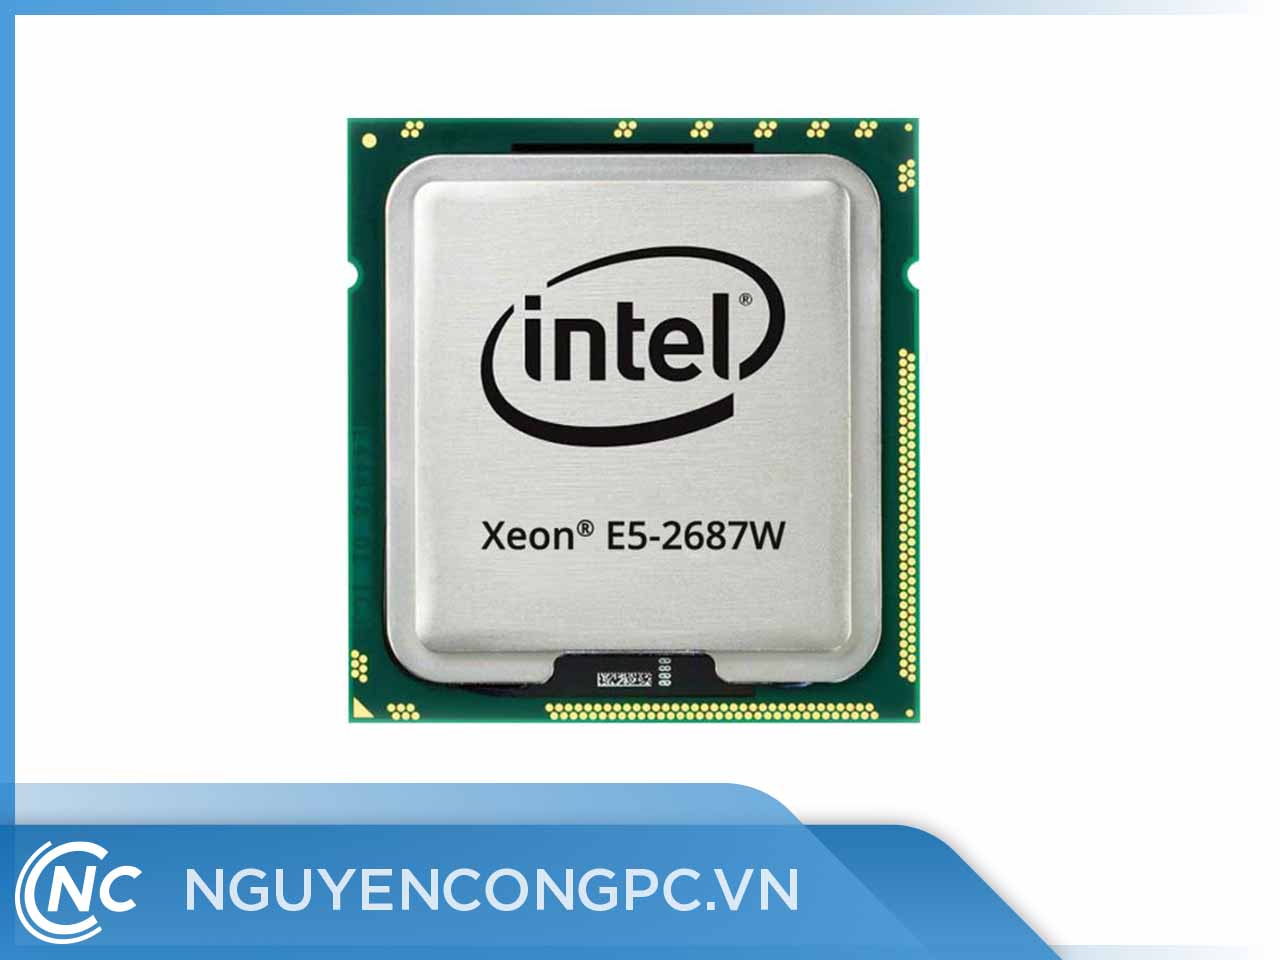 CPU Intel Xeon Processor E5-2687W (3.1GHz Turbo Up To 3.8GHz, 8 nhân 16 luồng, 20MB Cache, LGA 2011)